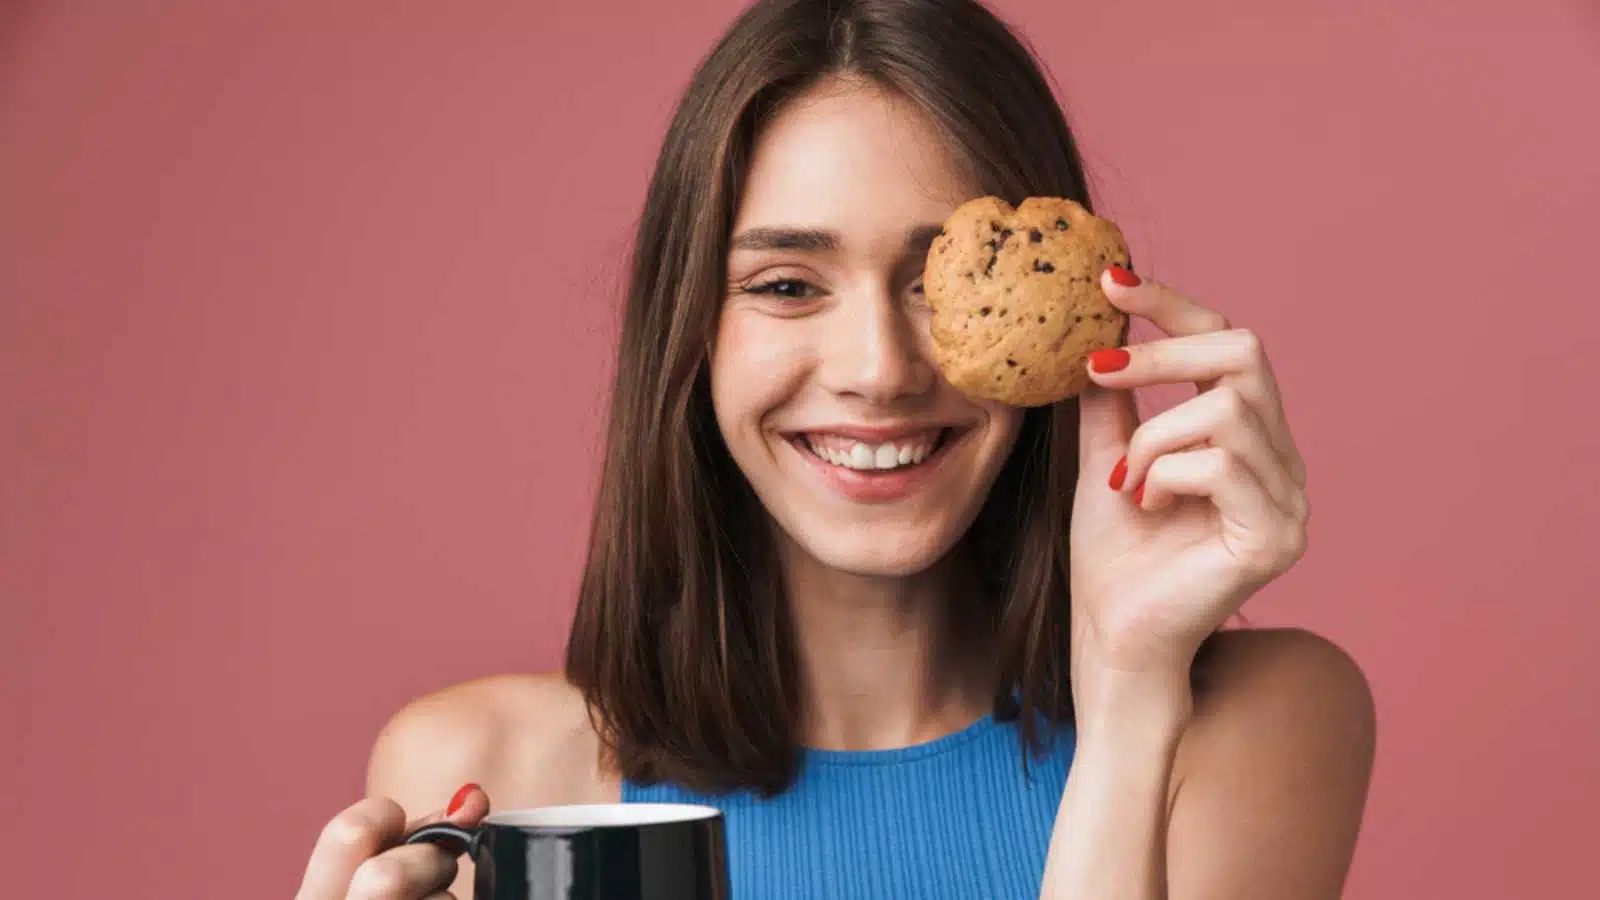 Woman eating cookies